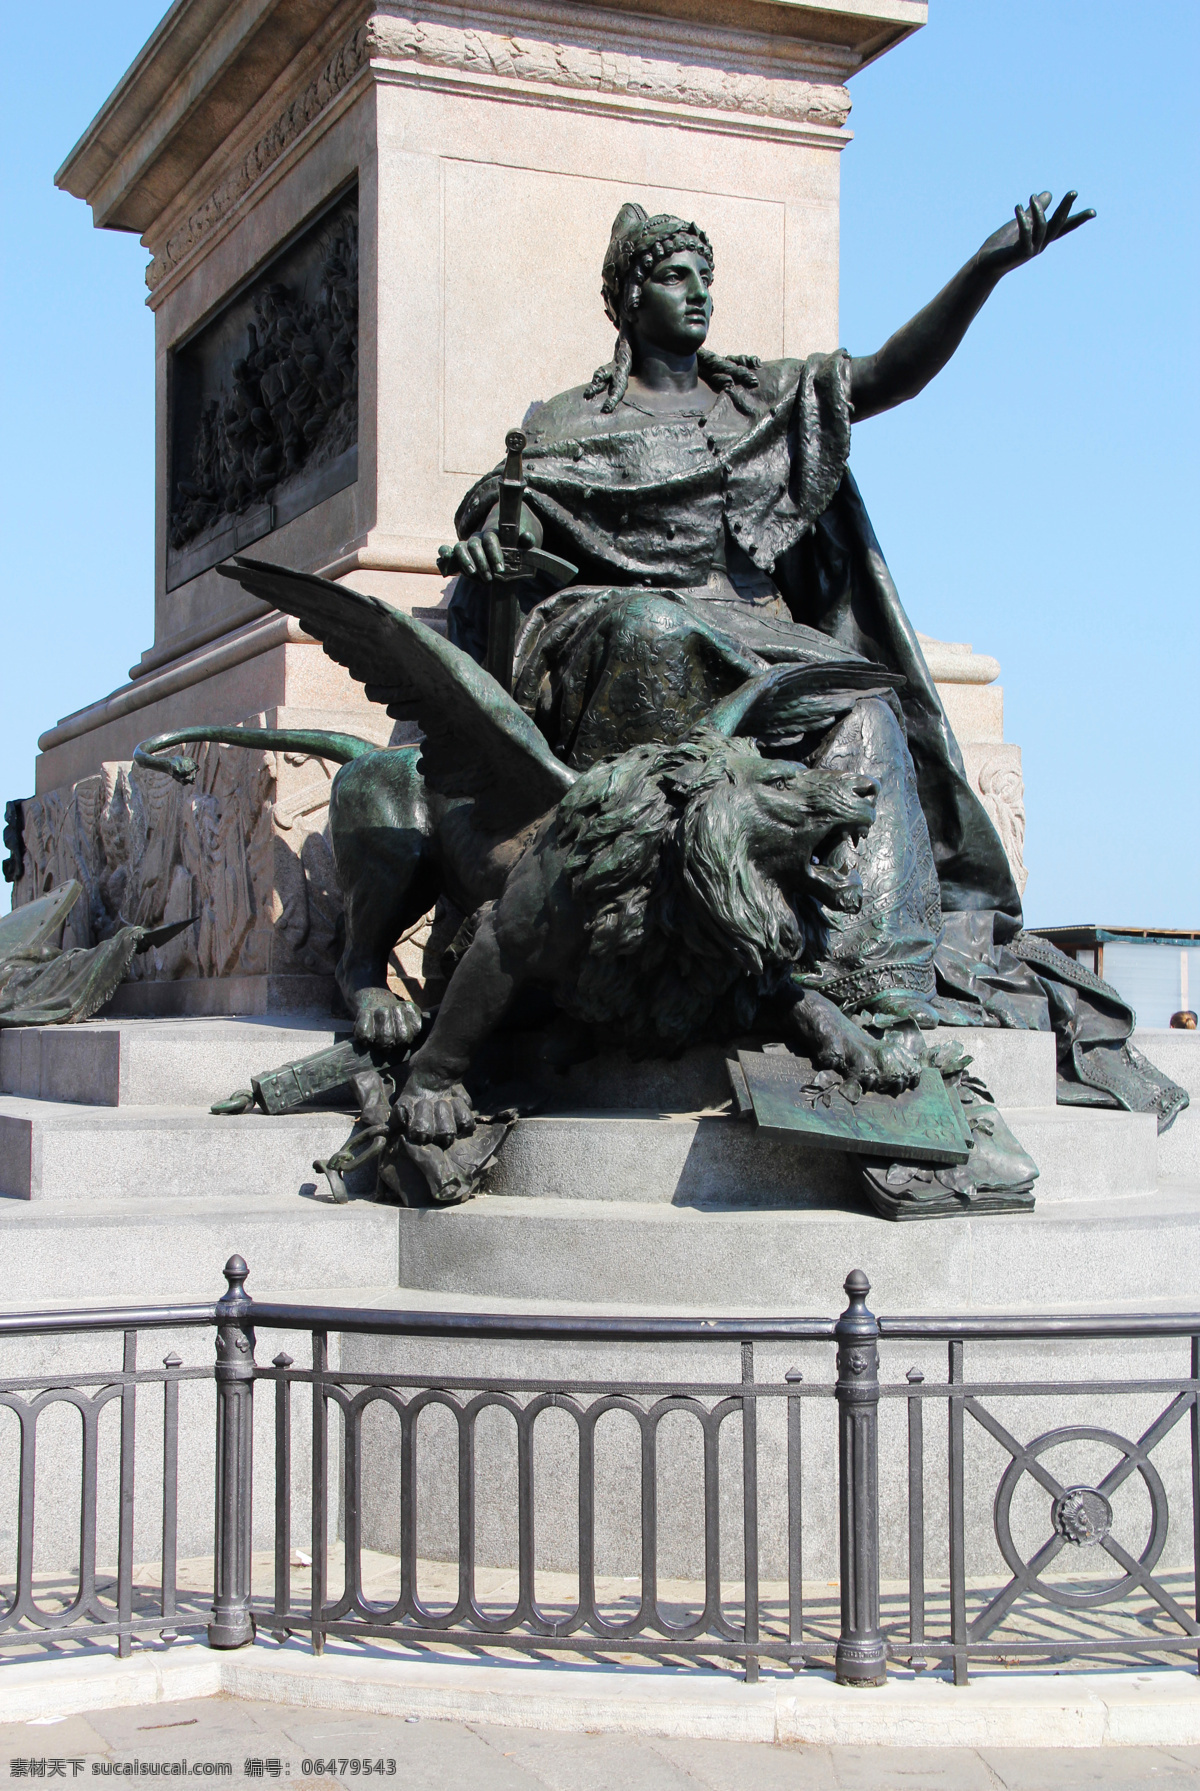 翅膀 雕塑 雕像 建筑园林 欧洲 青铜 狮子 法意 风光图片 法意风光 城市雕塑 青铜雕塑 欧洲摄影 psd源文件